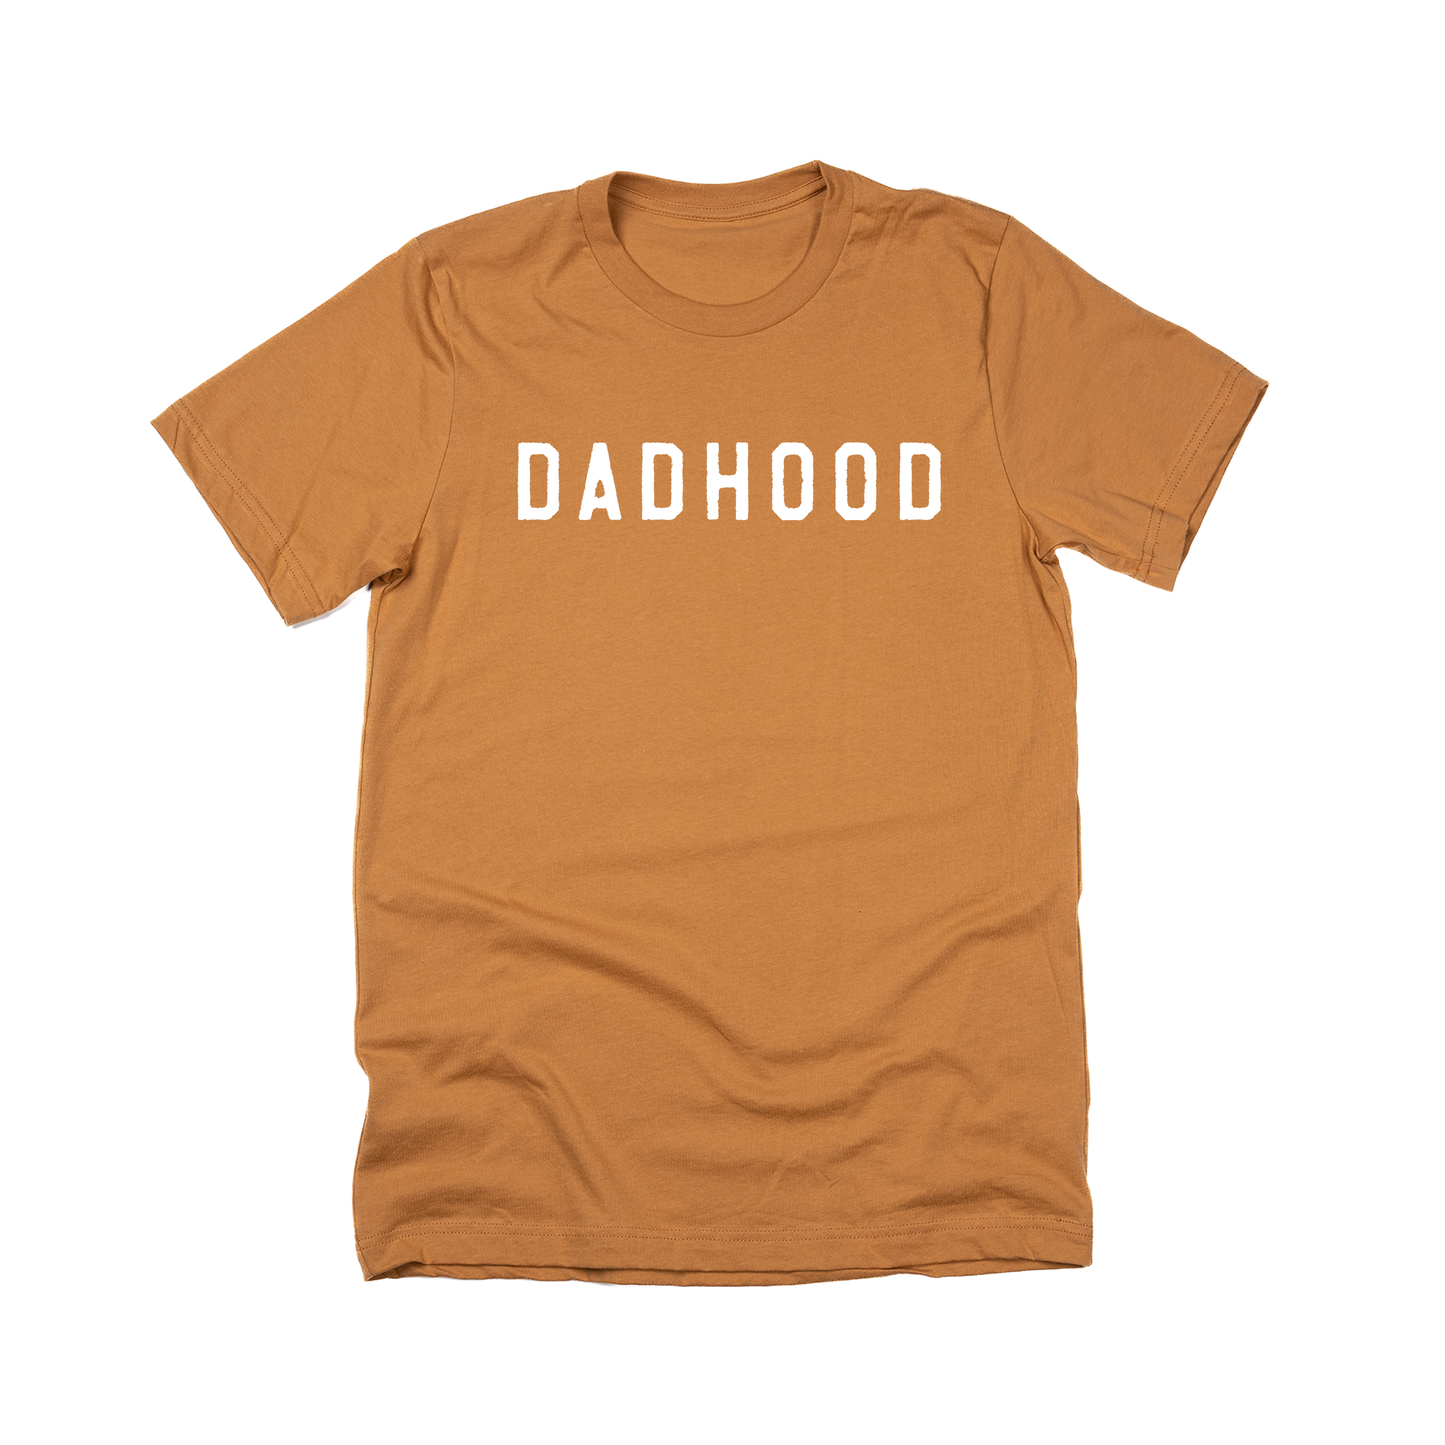 Dadhood (Rough,  White) - Tee (Camel)